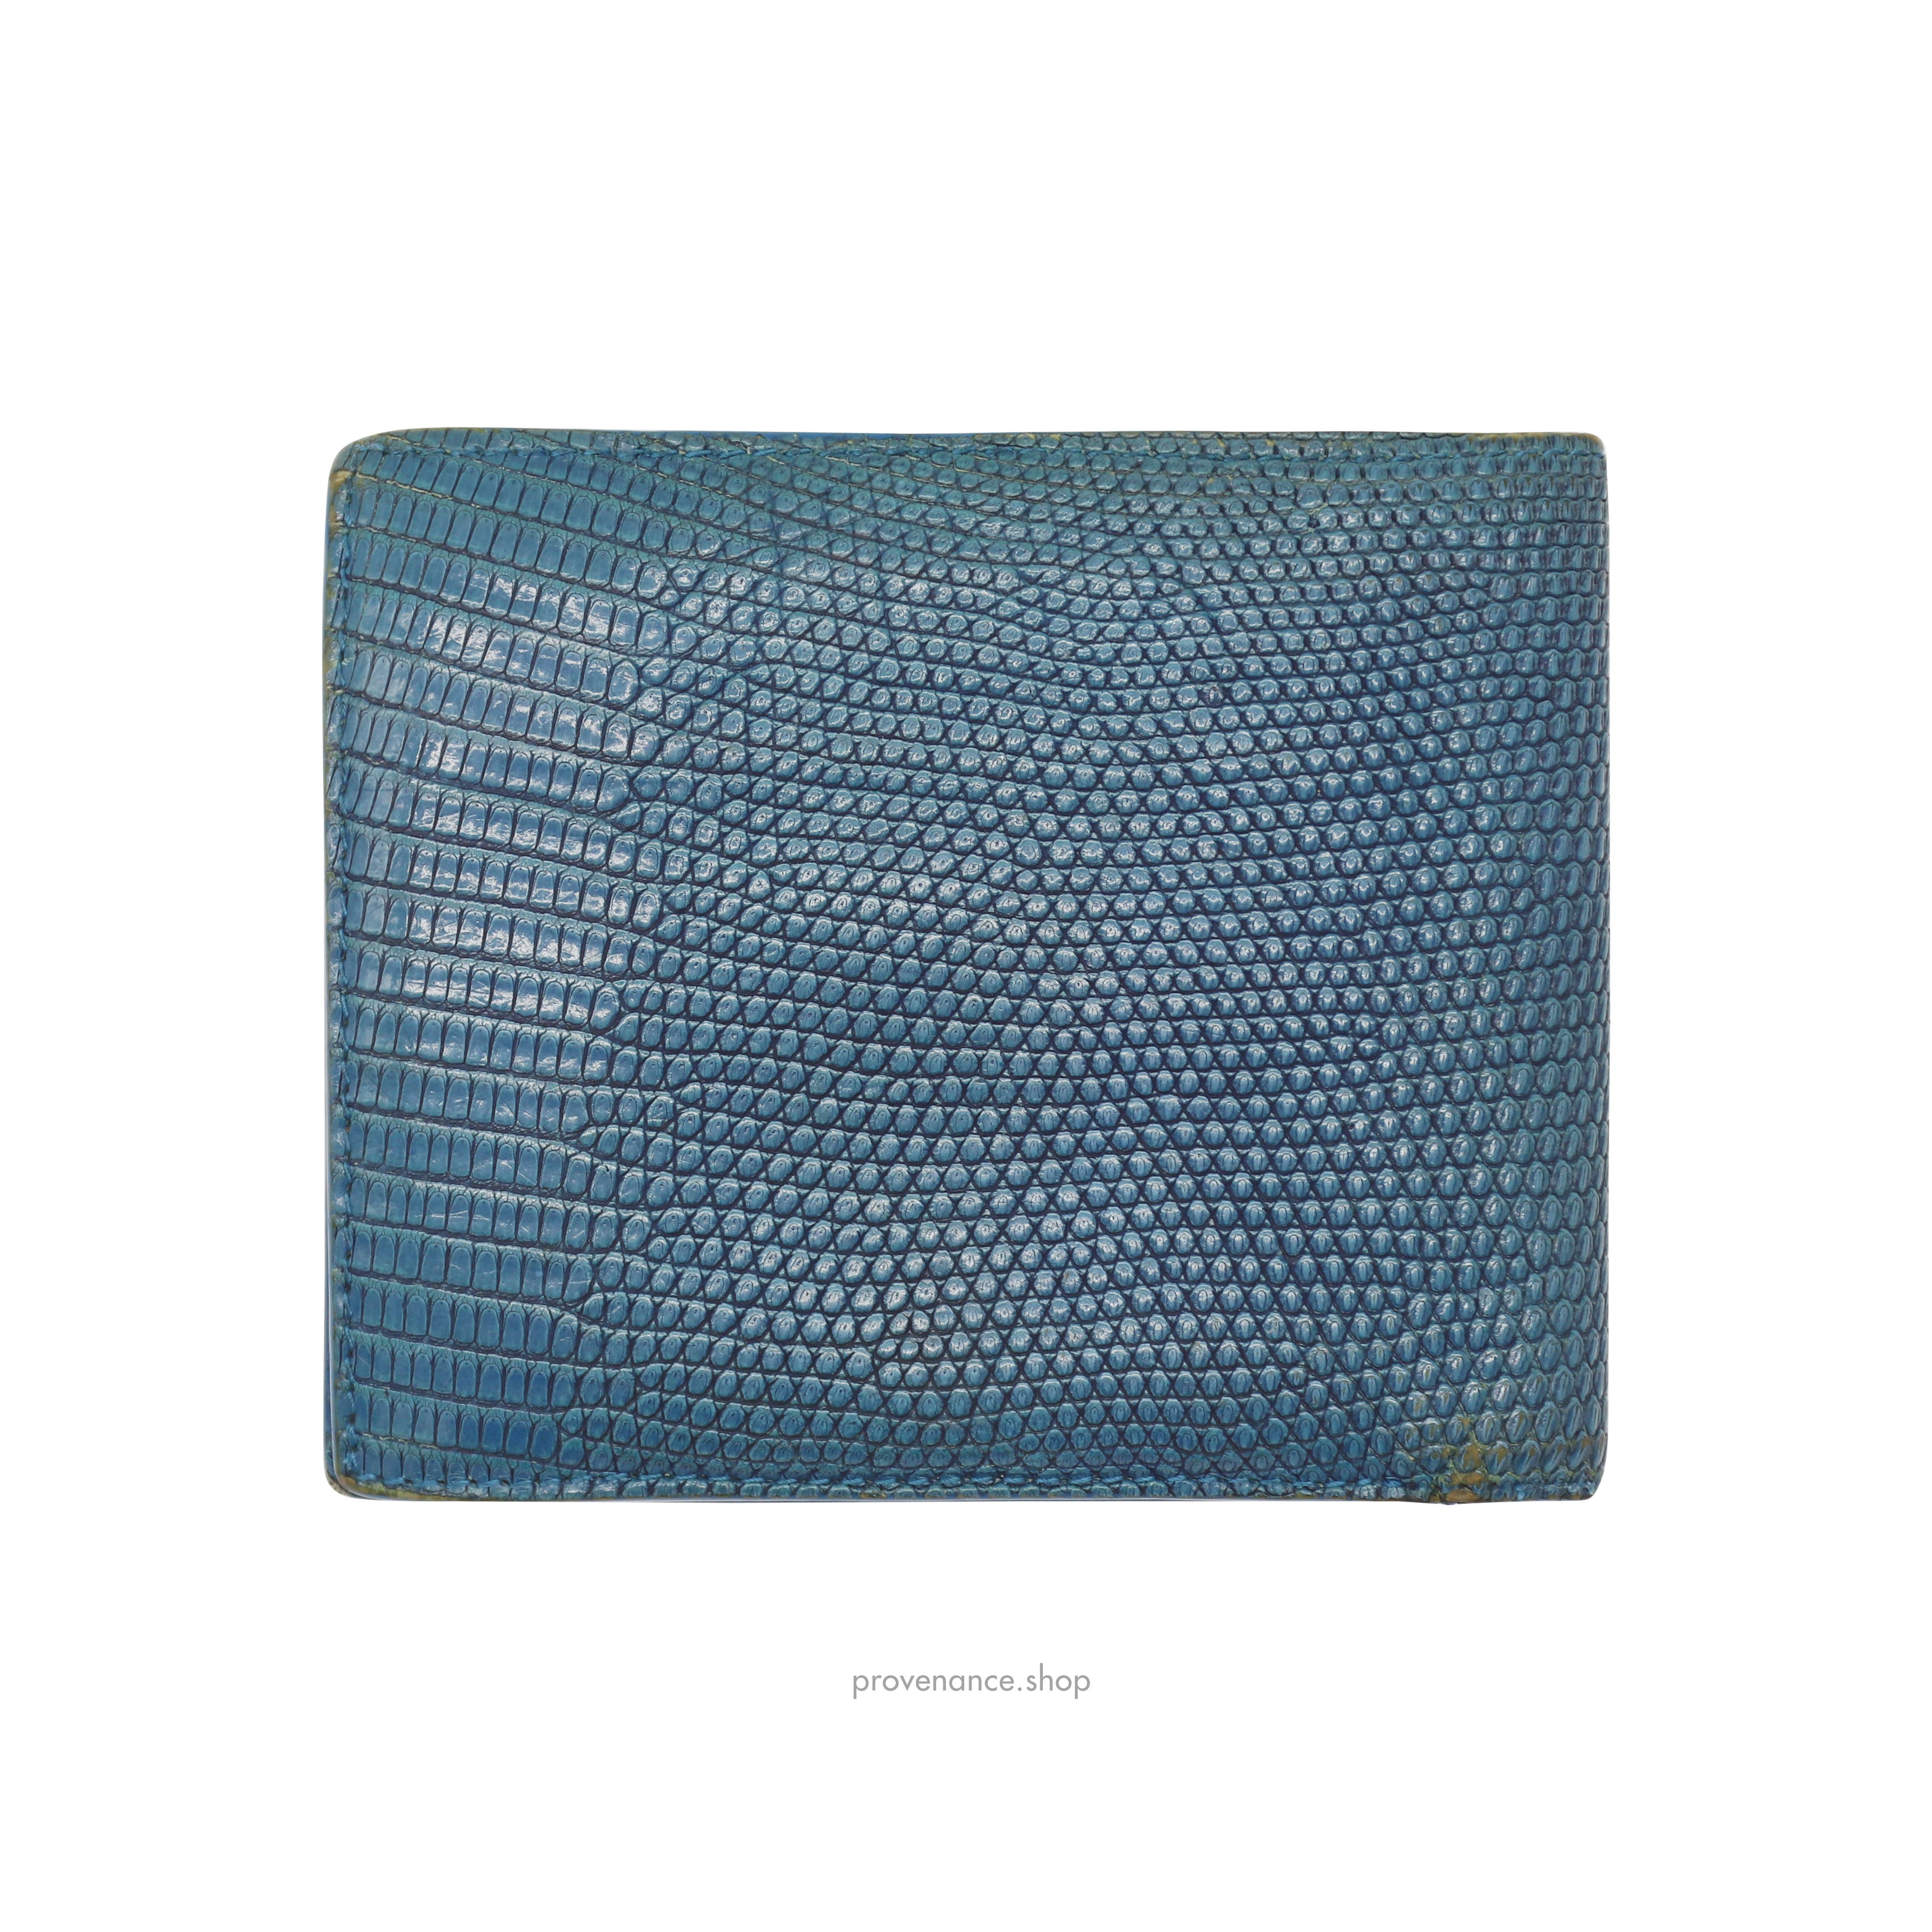 Bifold Wallet - Blue Lizard Leather - 3